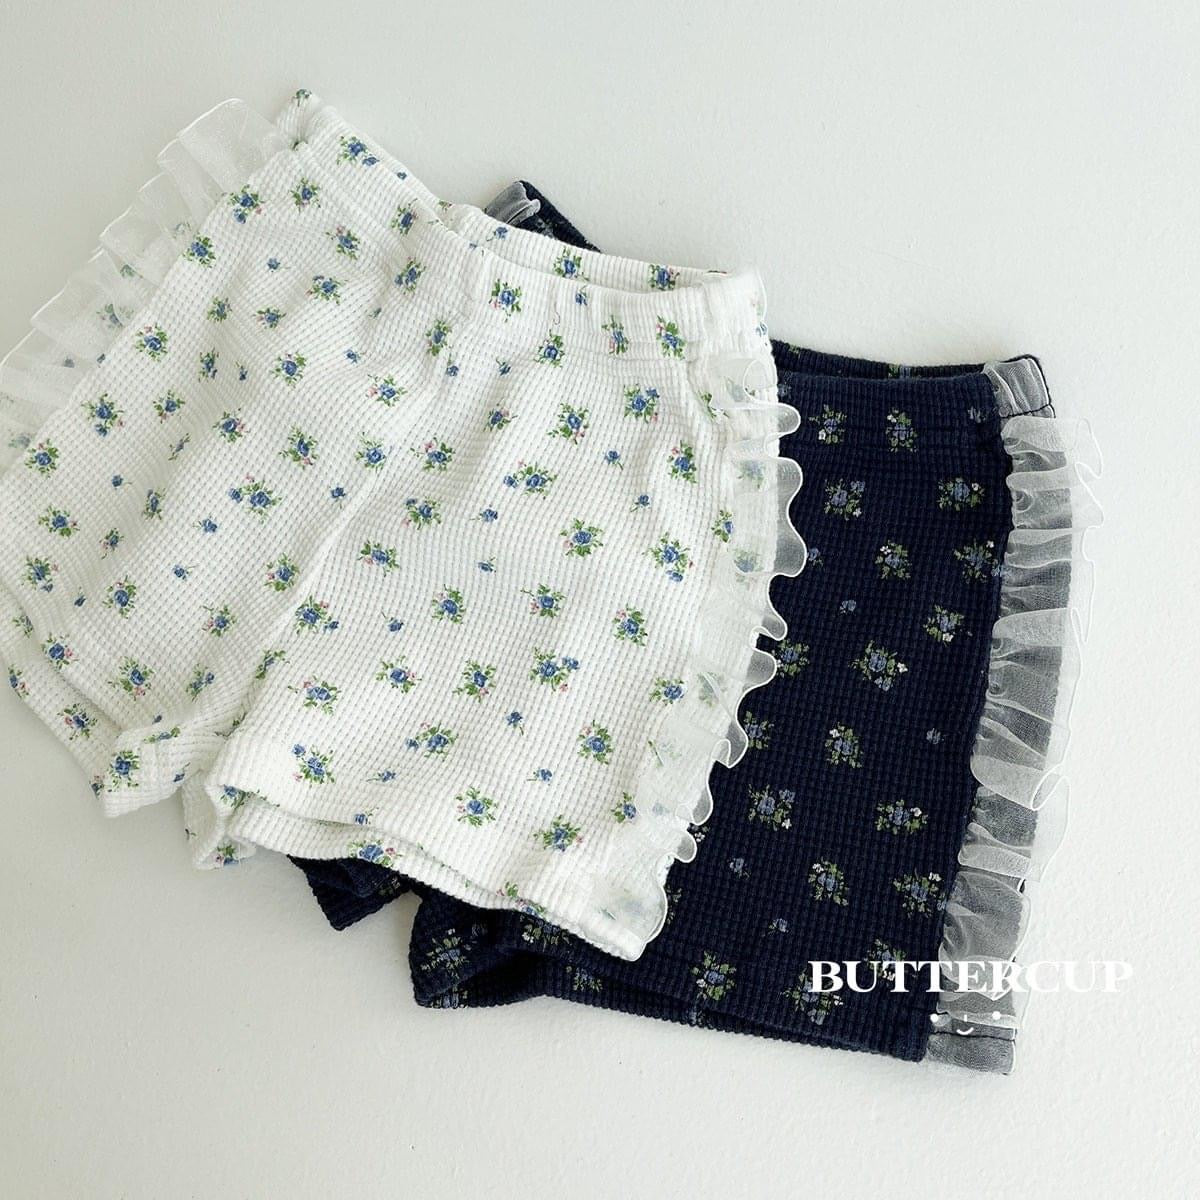 Buttercup 碎花餅乾蕾絲短褲 (kids 80-120cm)